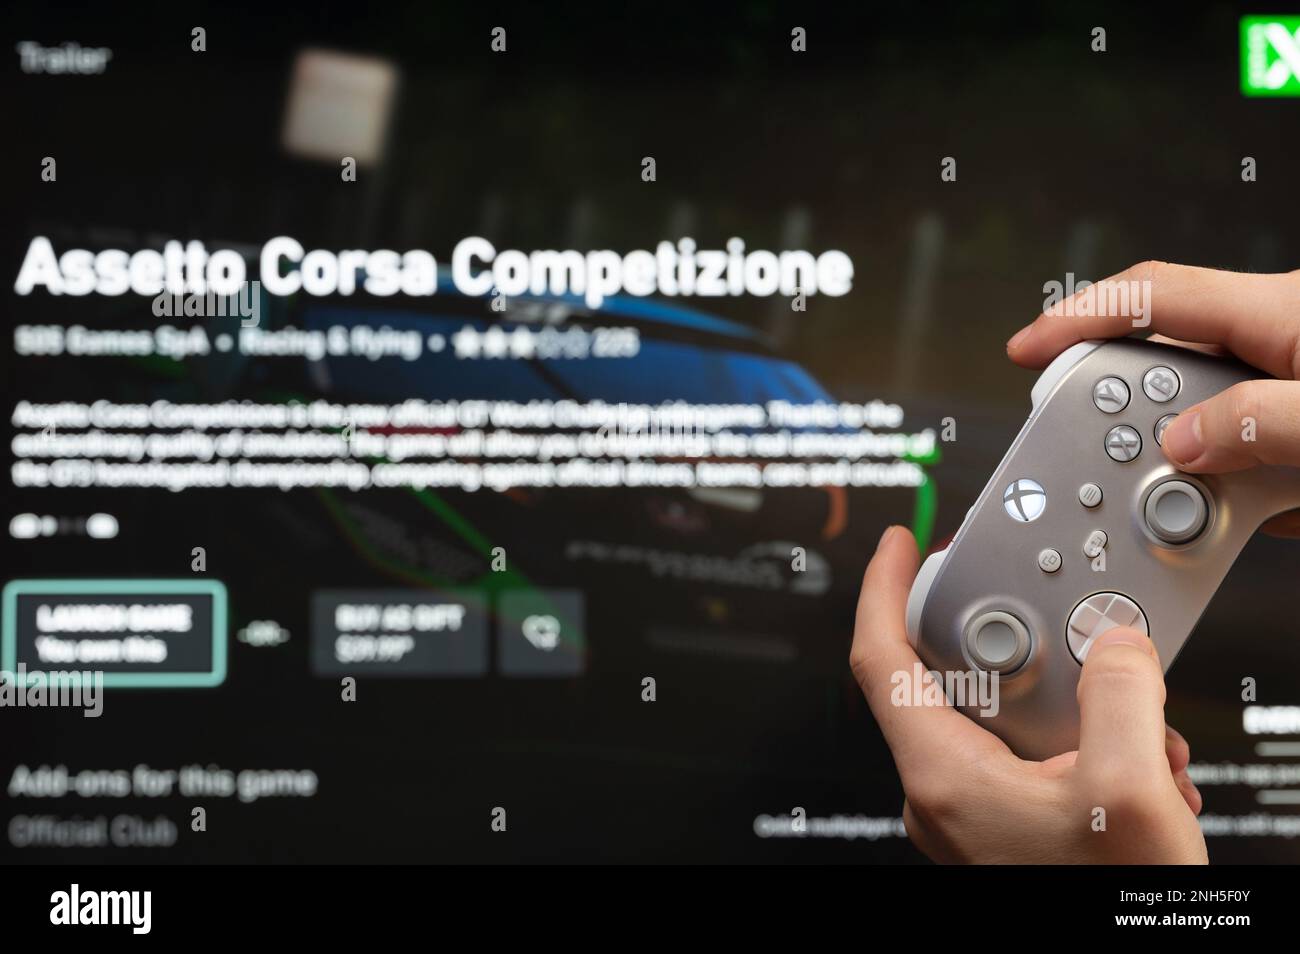 New york, Etats-Unis - 20 février 2023: Homme jouer Assetto Corsa jeu sur console d'ordinateur avec joystick xbox dans la main vue rapprochée Banque D'Images